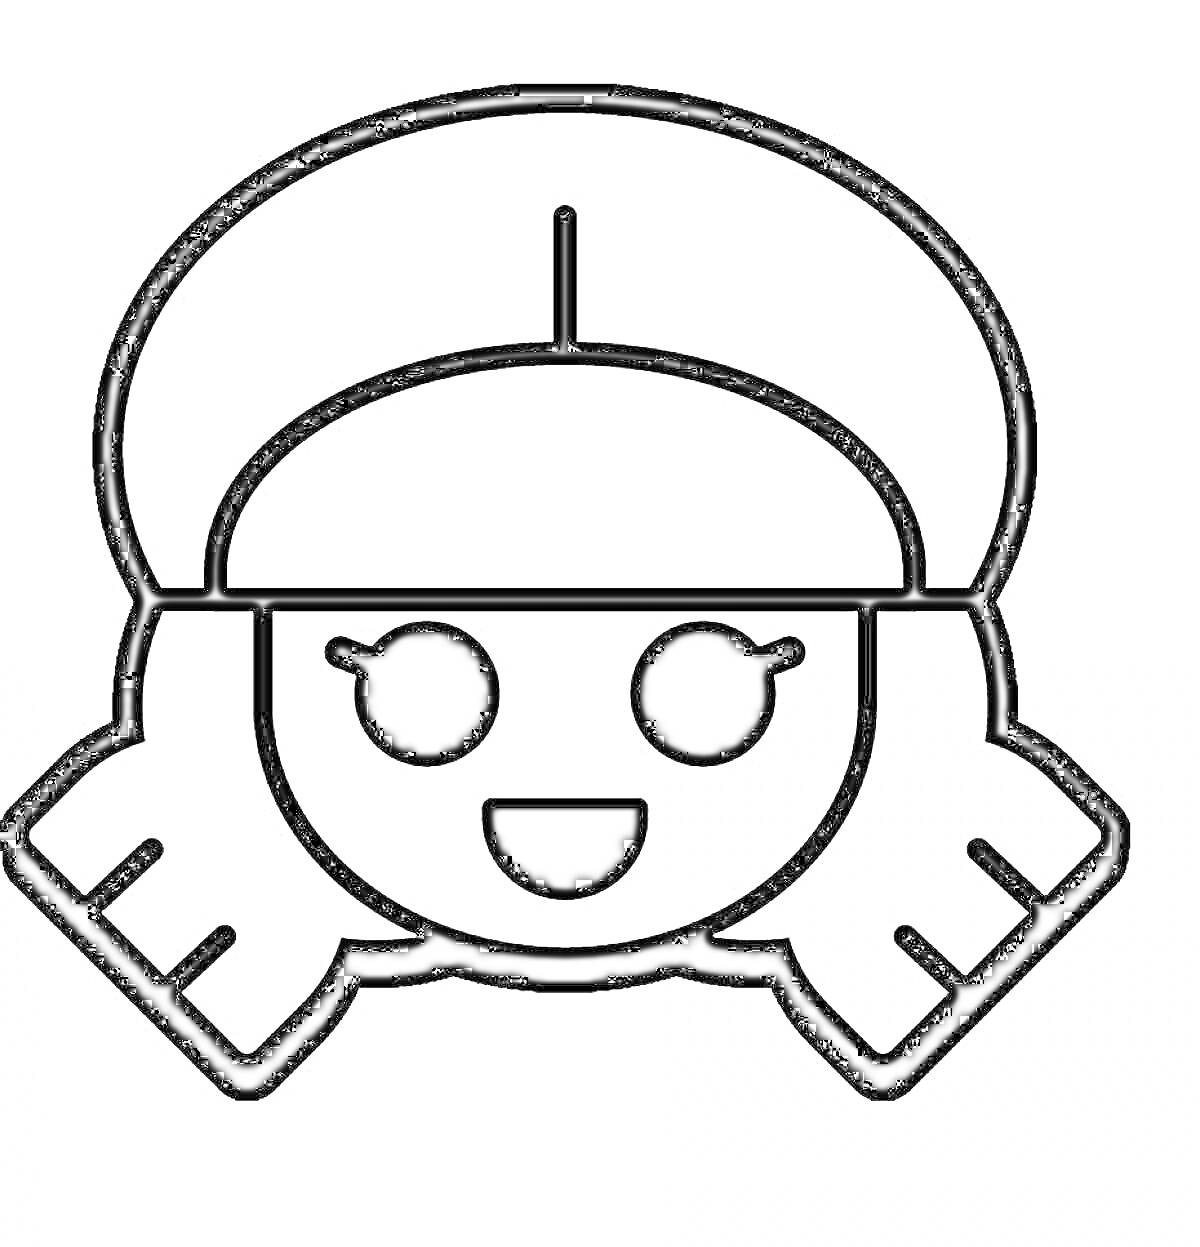 Раскраска Эмодзи из игры Brawl Stars с изображением персонажа с улыбающимся лицом, в шапке и с волосами